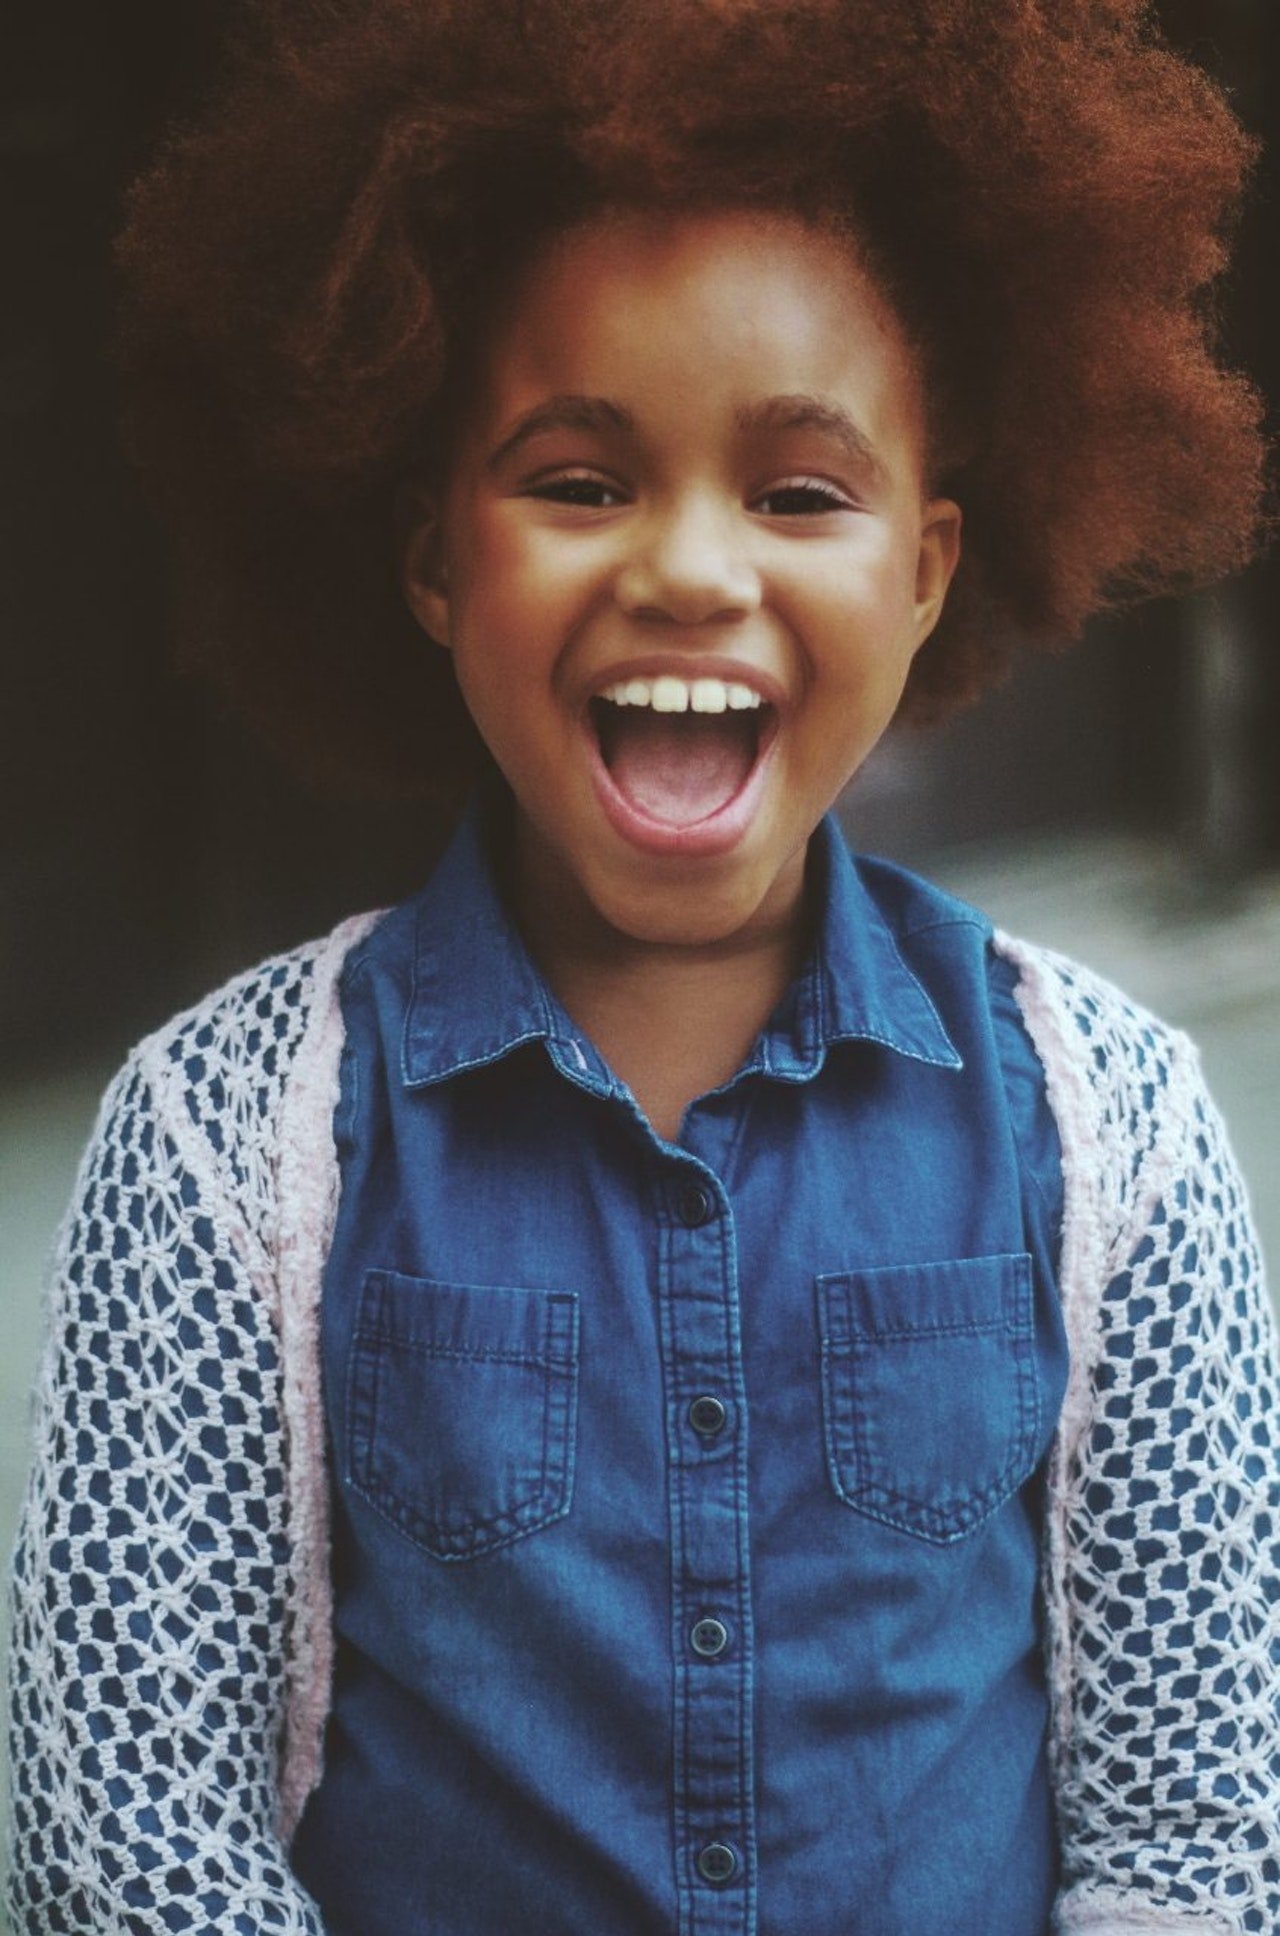 Criança de cabelo afro usando uma camiseta jeans e sorrindo.